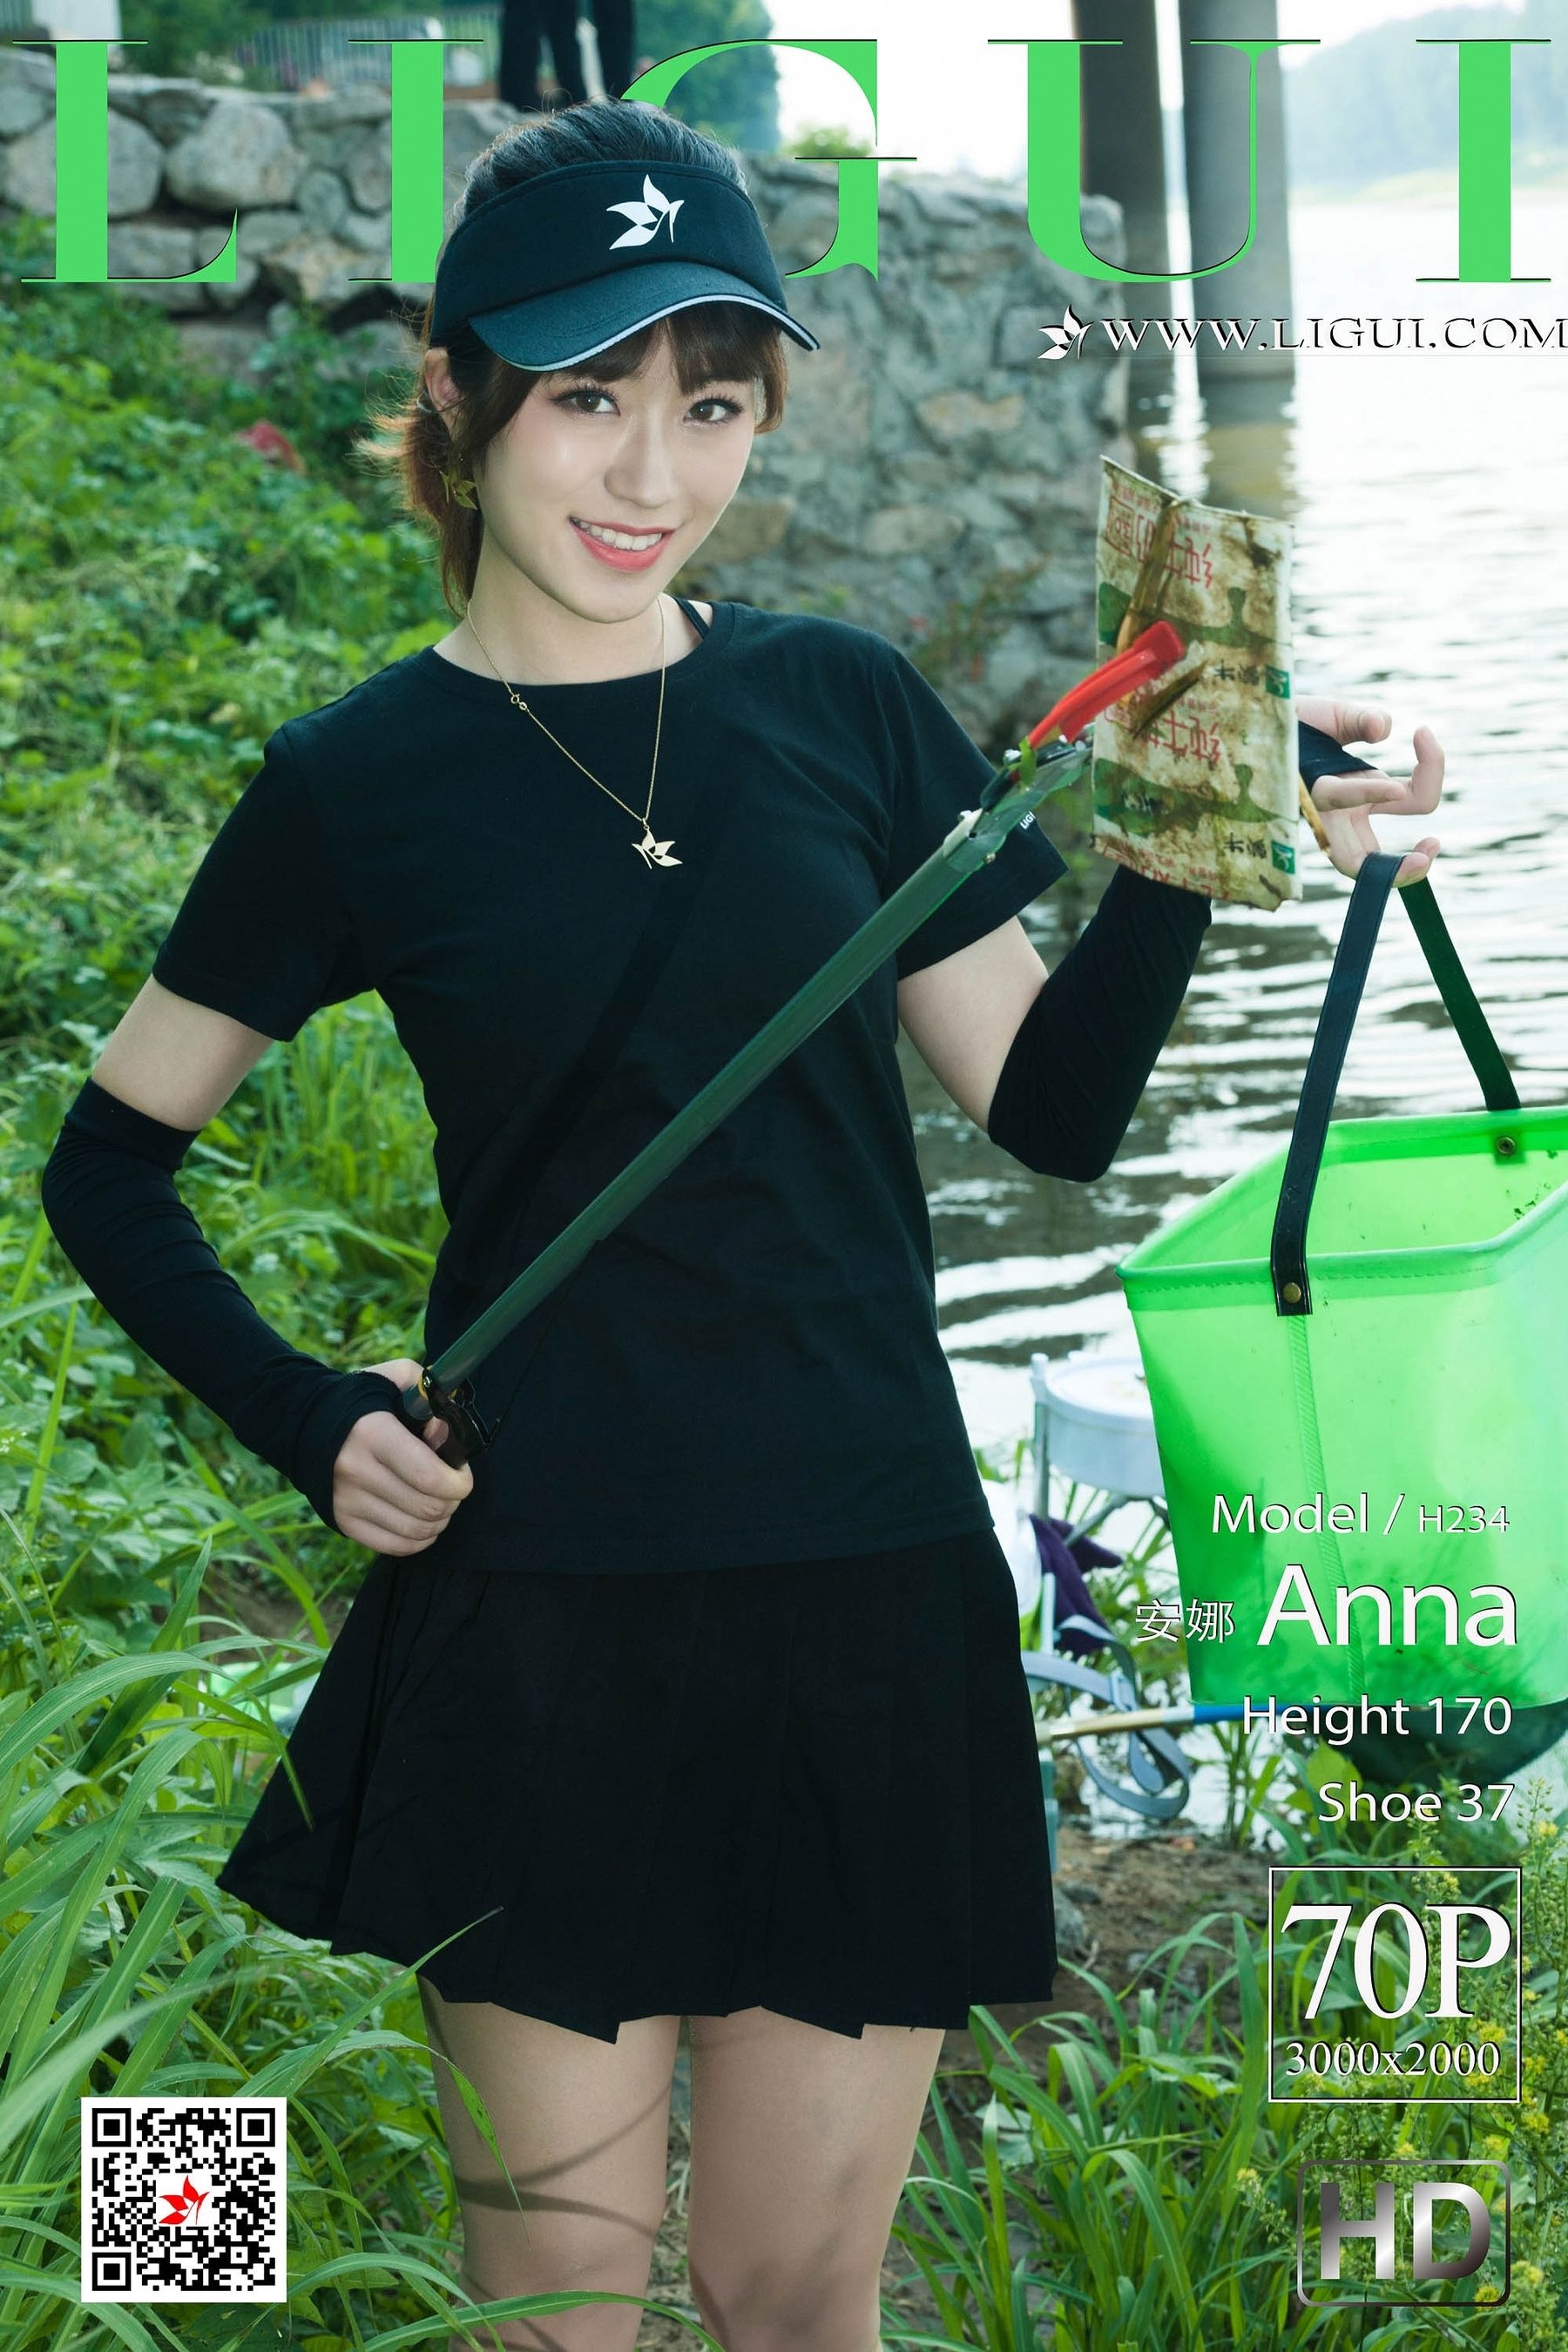 [丽柜Ligui] 2019.06.26 网络丽人 Model 安娜Anna  第-1张